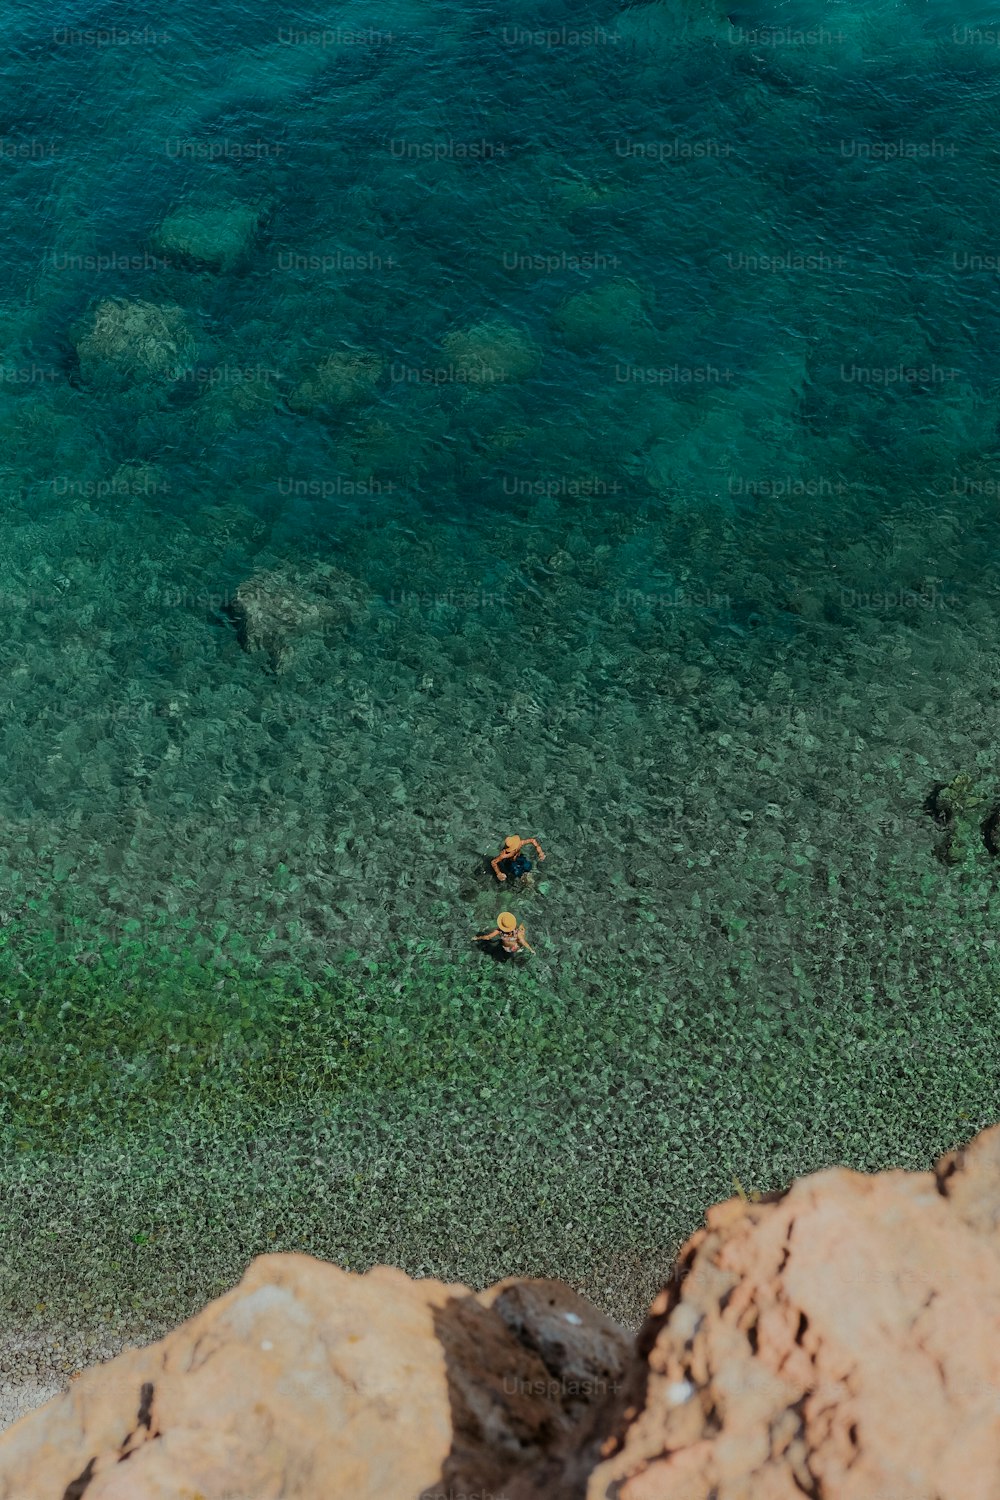 Un grupo de personas nadando en un cuerpo de agua